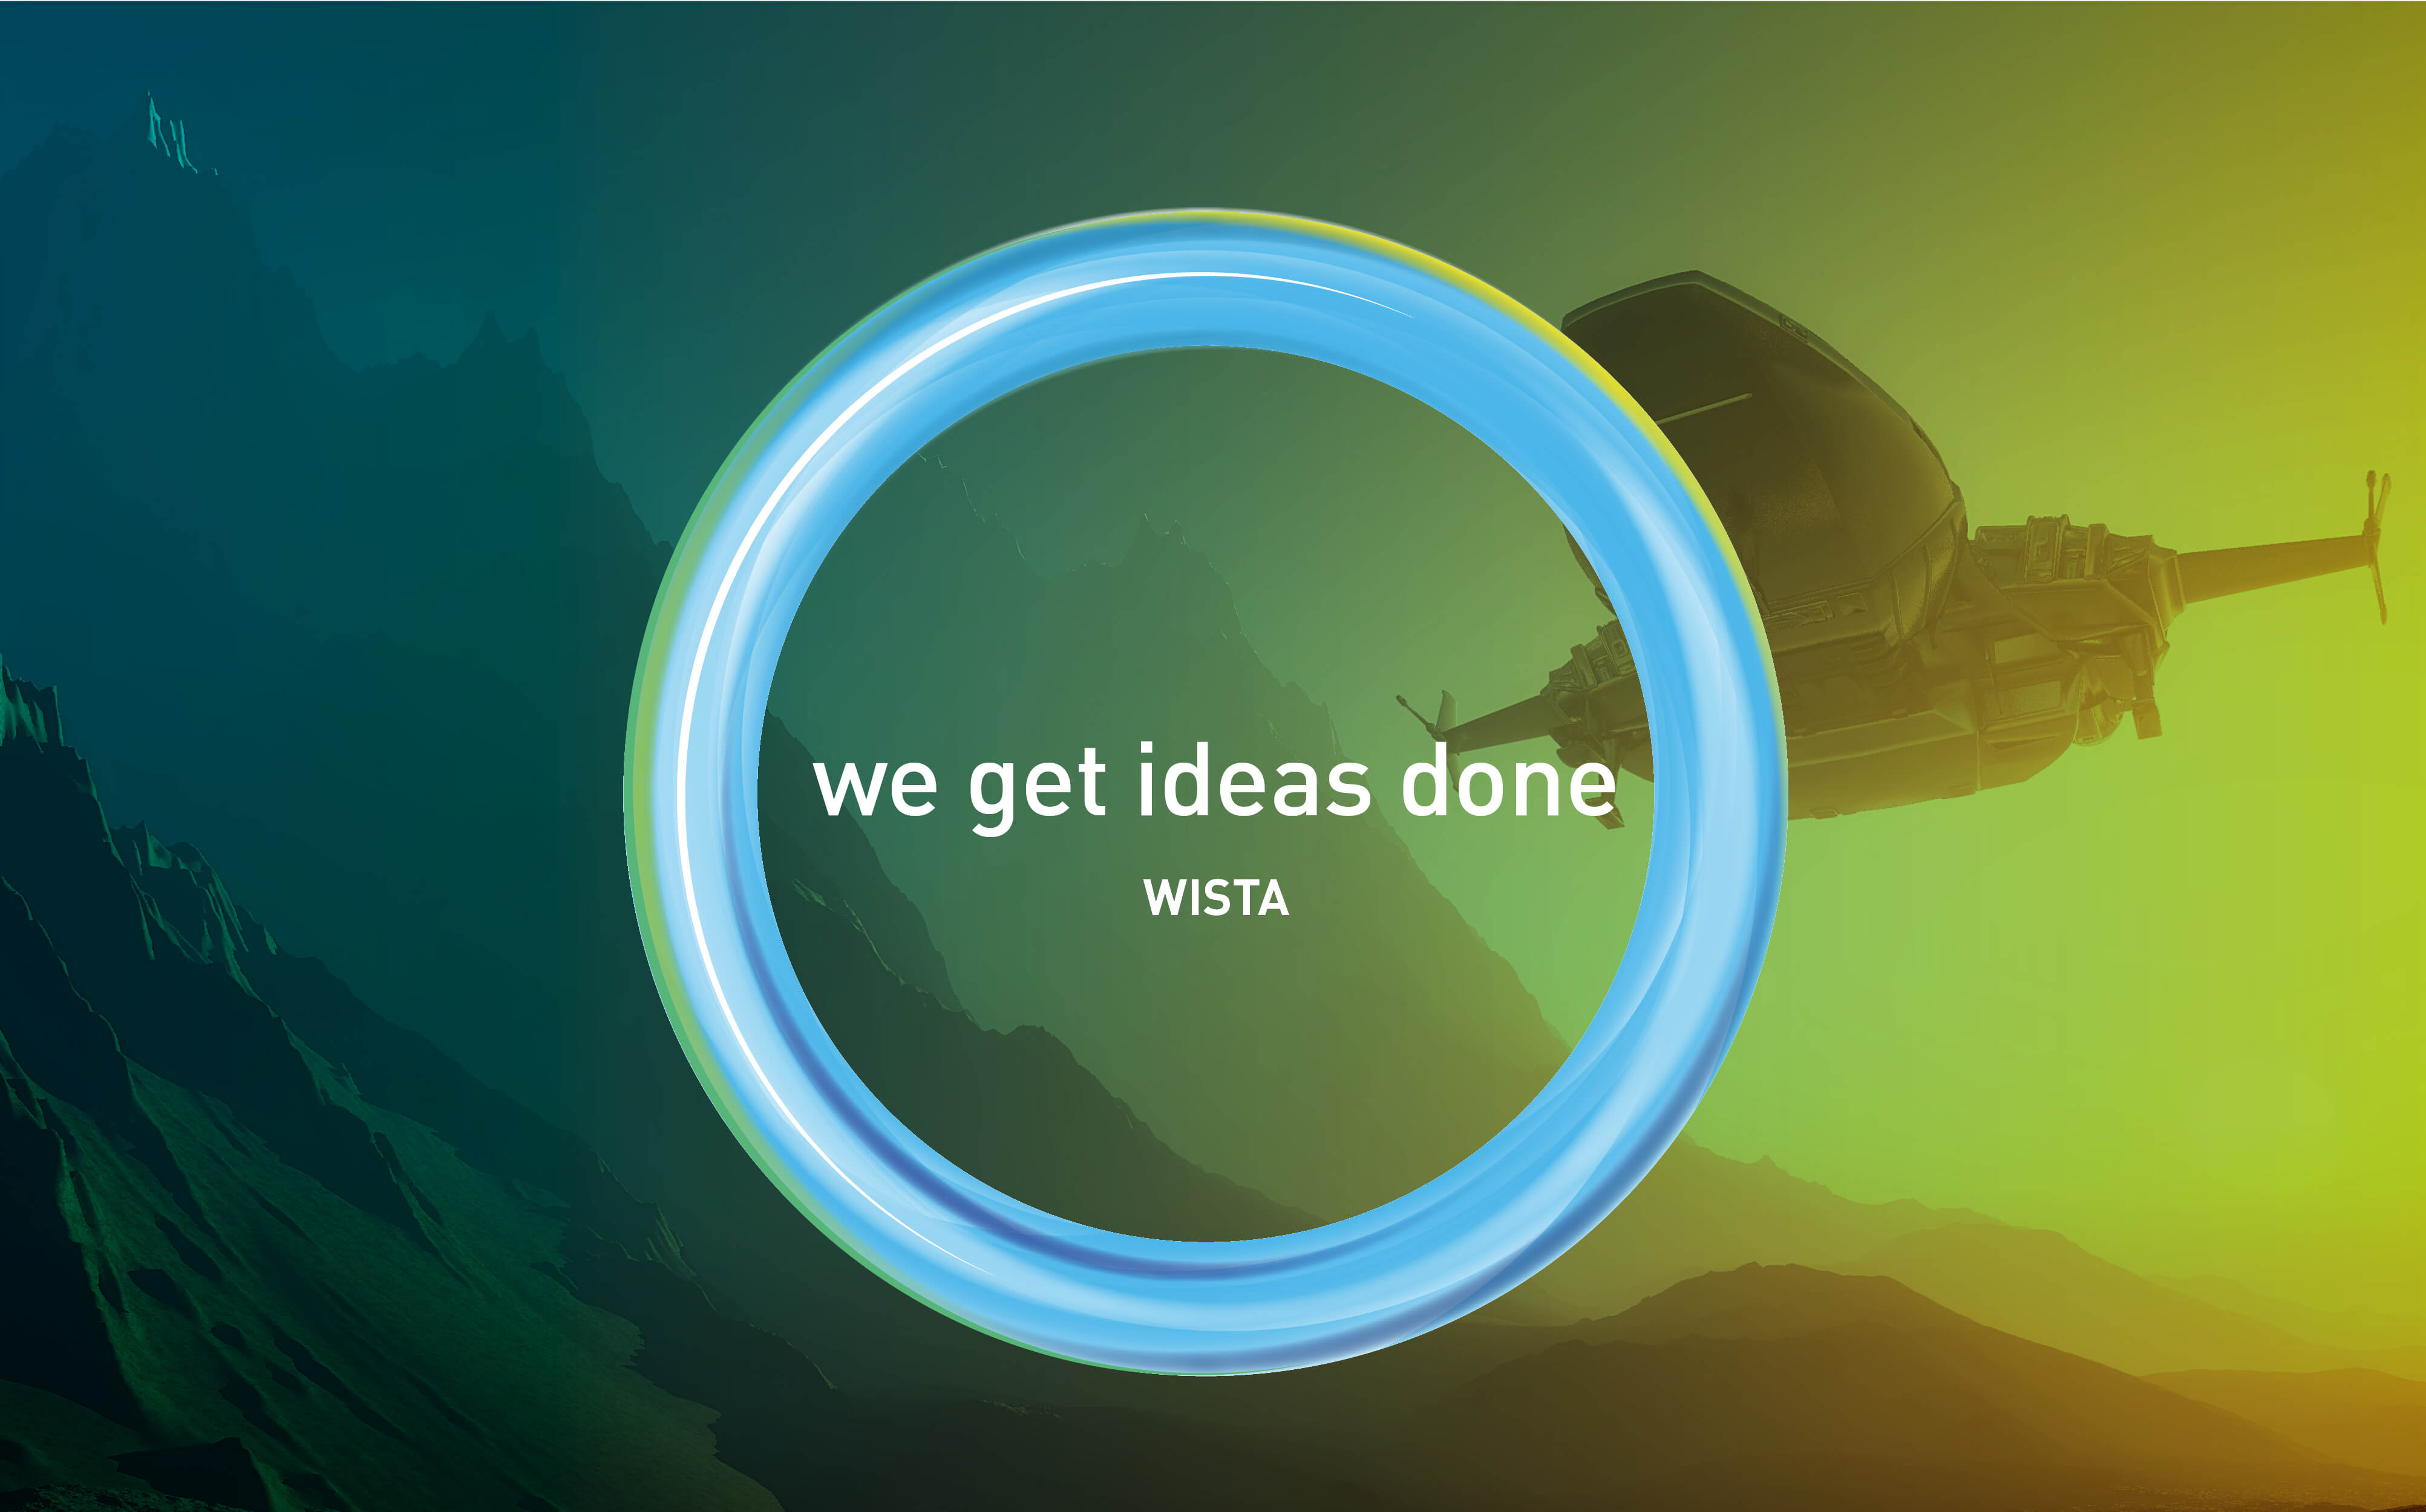 WISTA - das Unternehmen hinter Deutschlands größtem Wissenschafts- und Technologiepark - bekommt endlich ein Gesicht. Das neue - von kakoii entwickelte - CD weckt Assoziationen an innovative Wissenschaft und energiereiches Plasma und der Claim “we get ideas done” bringt die Stärken der WISTA auf den Punkt.